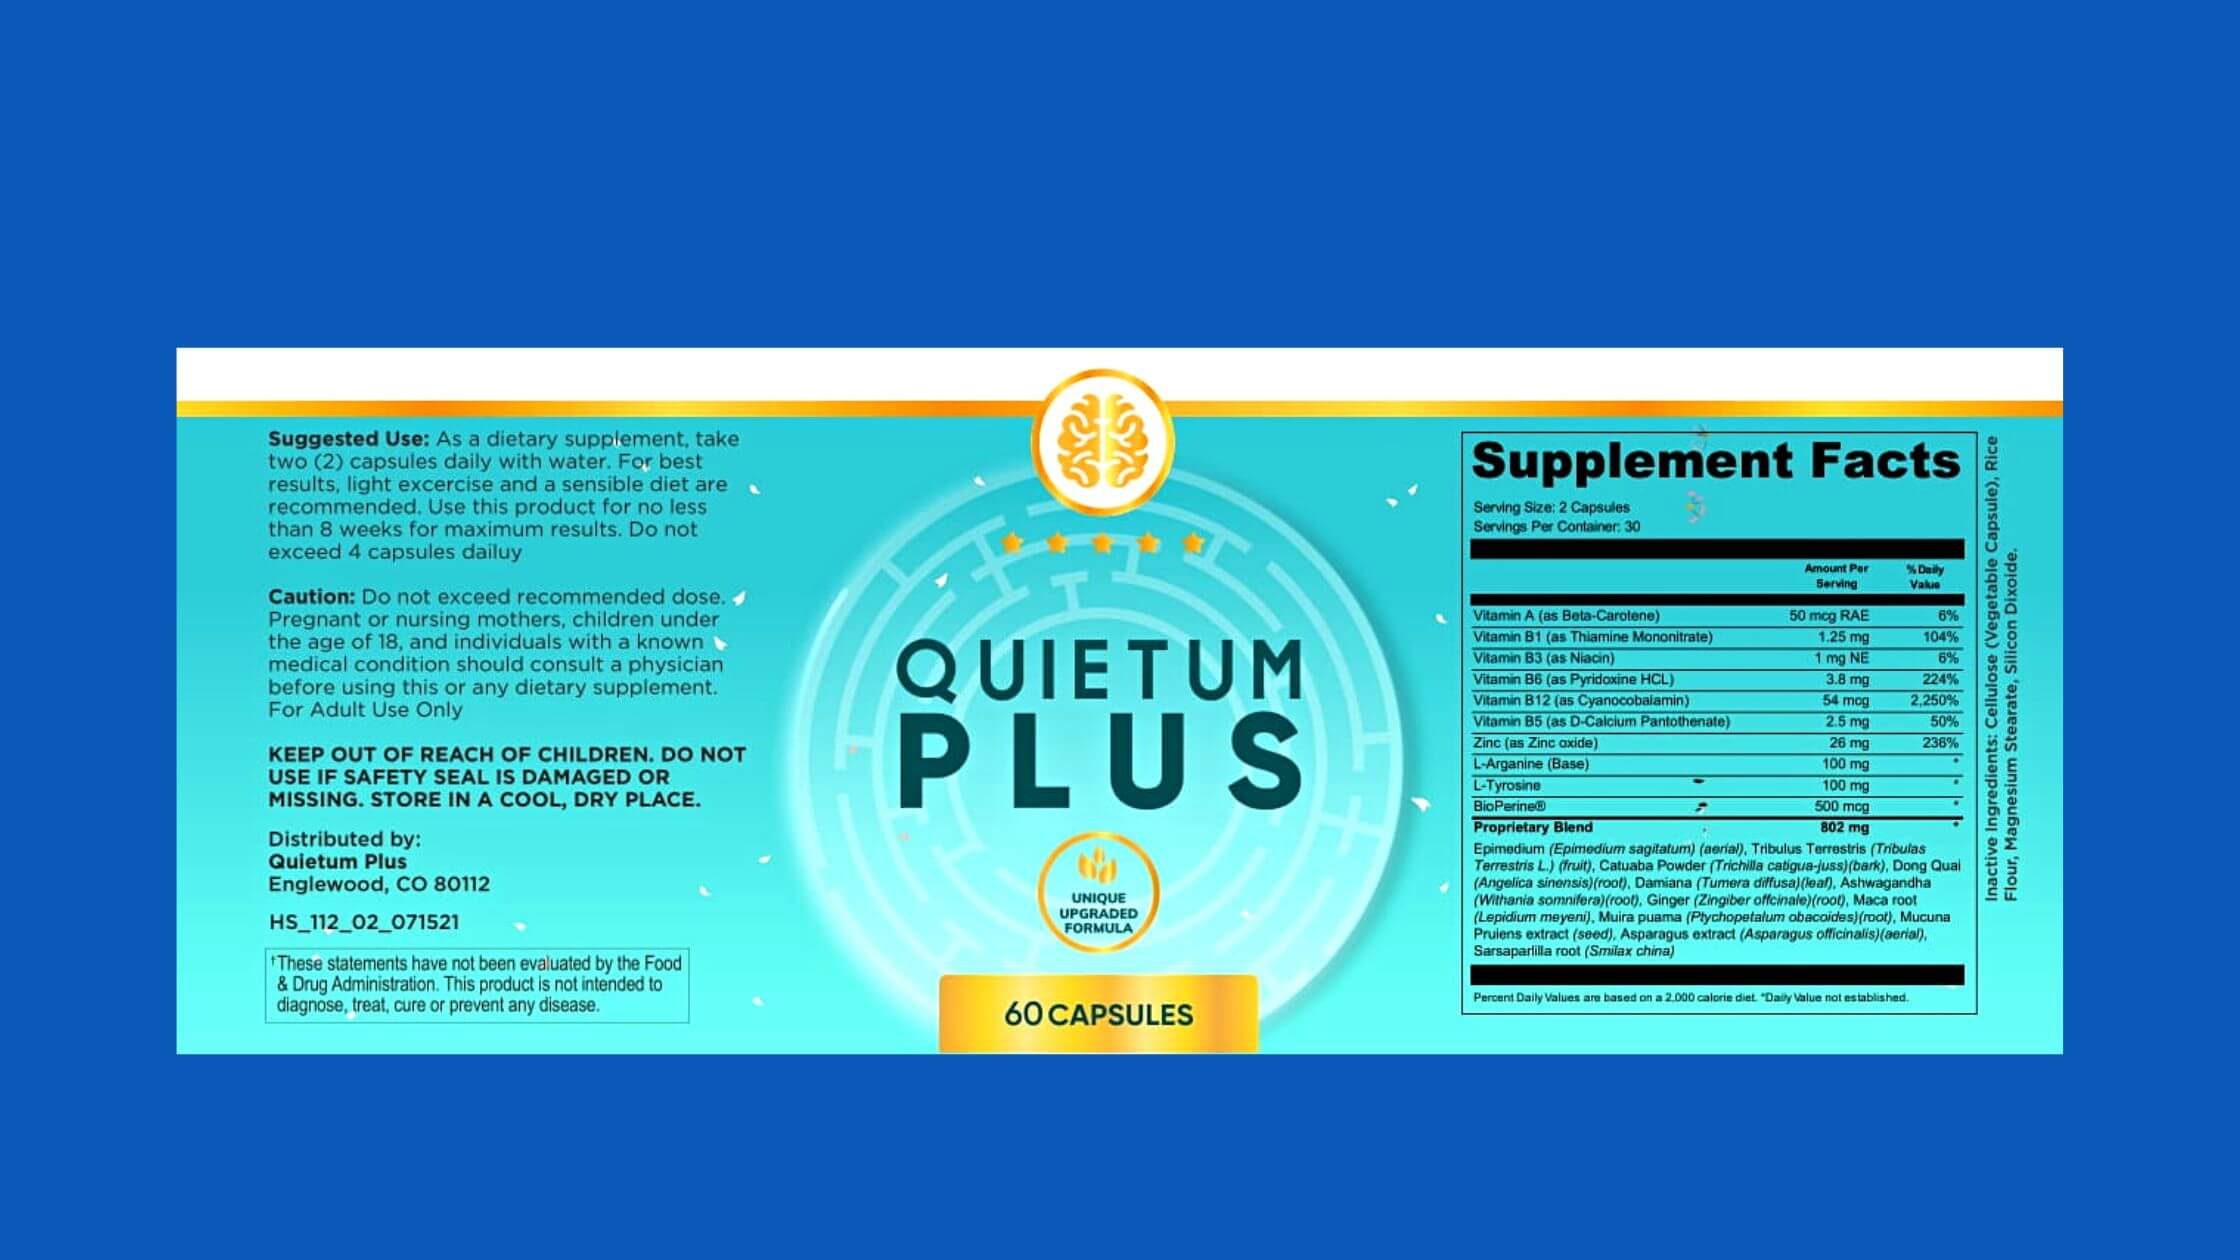 Quietum Plus Suplement Label